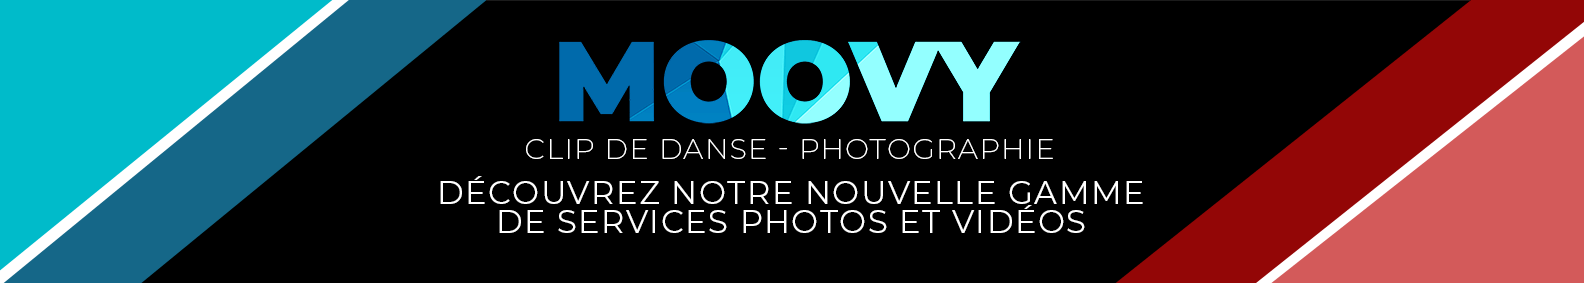 Moovy Nantes - Dance Clip